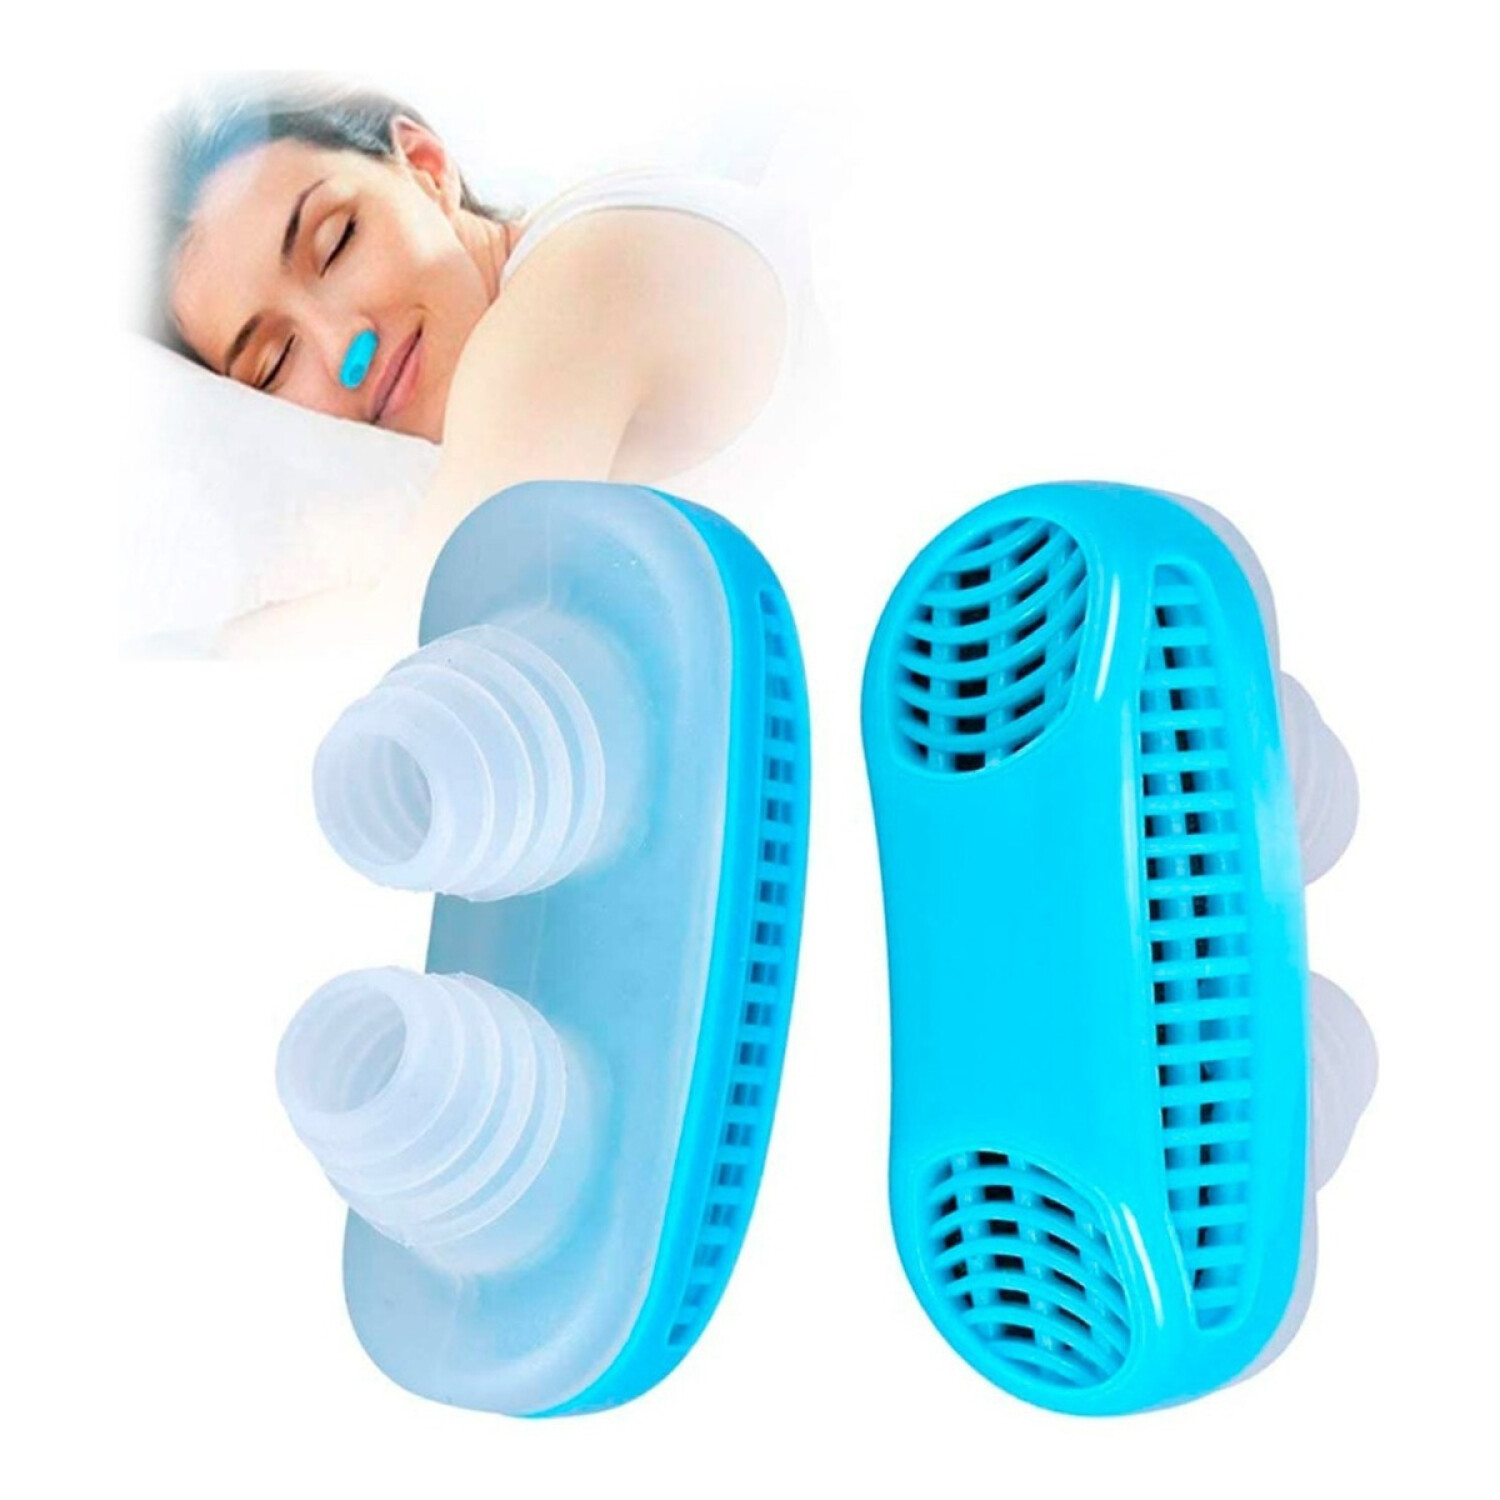 Airmax - Dilatadores nasales clásicos unisex, paquete de dos unidades,  dispositivo antironquidos para hombres y mujeres, mejora el flujo de aire